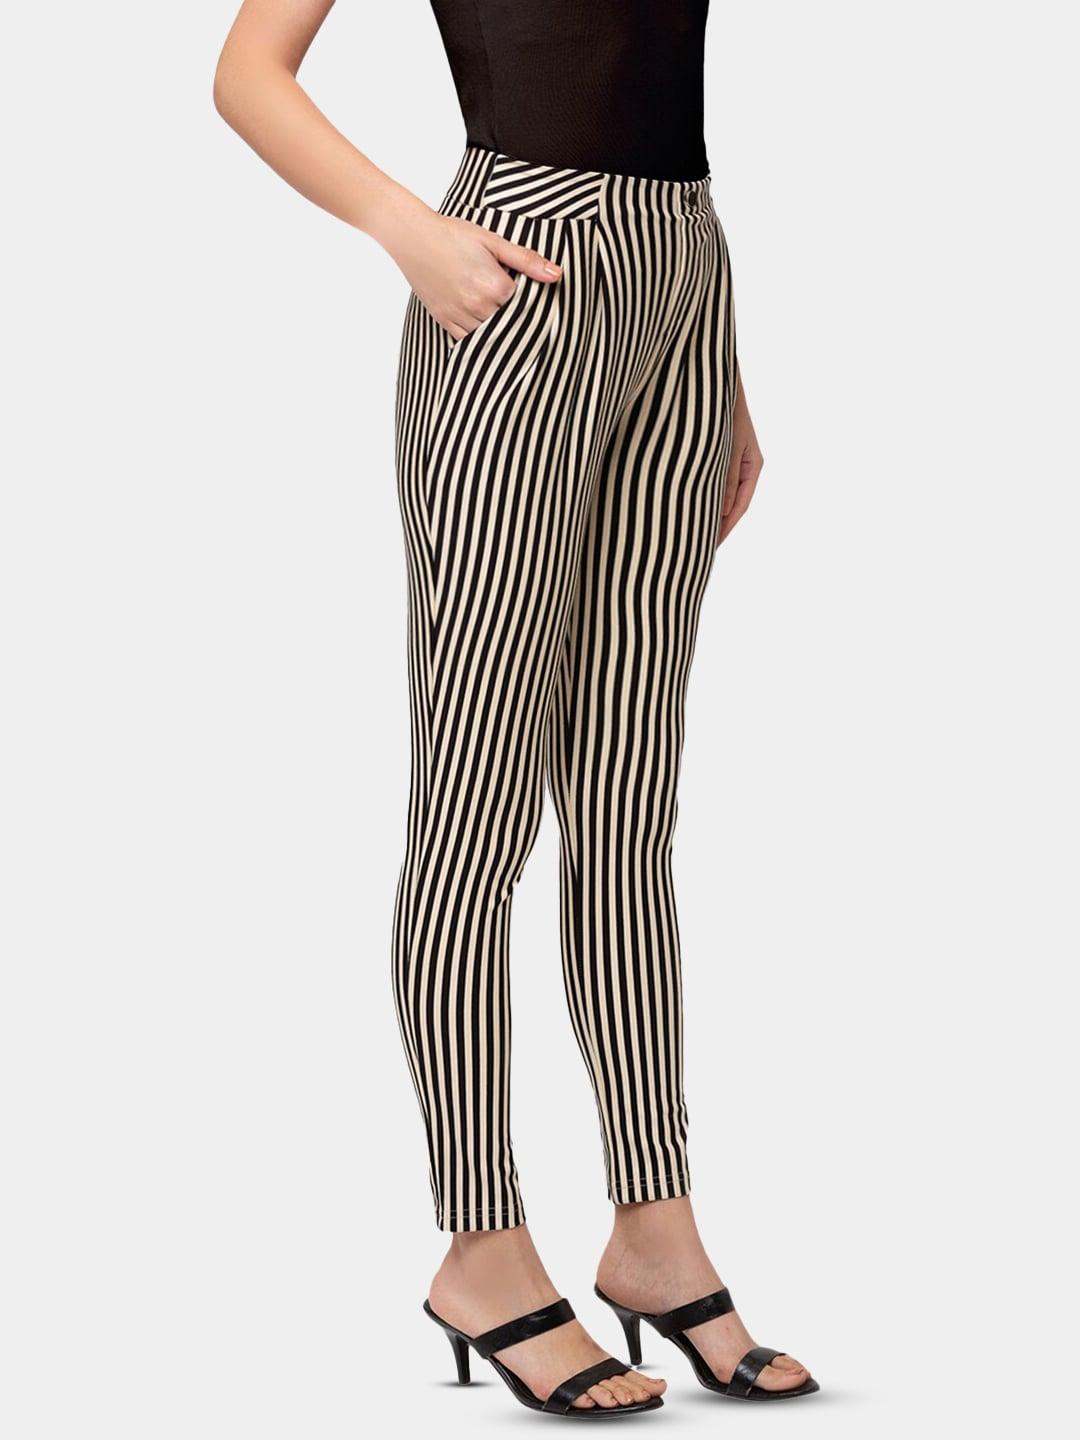 sheczzar-women-beige-&-black-slim-fit-striped-jeggings